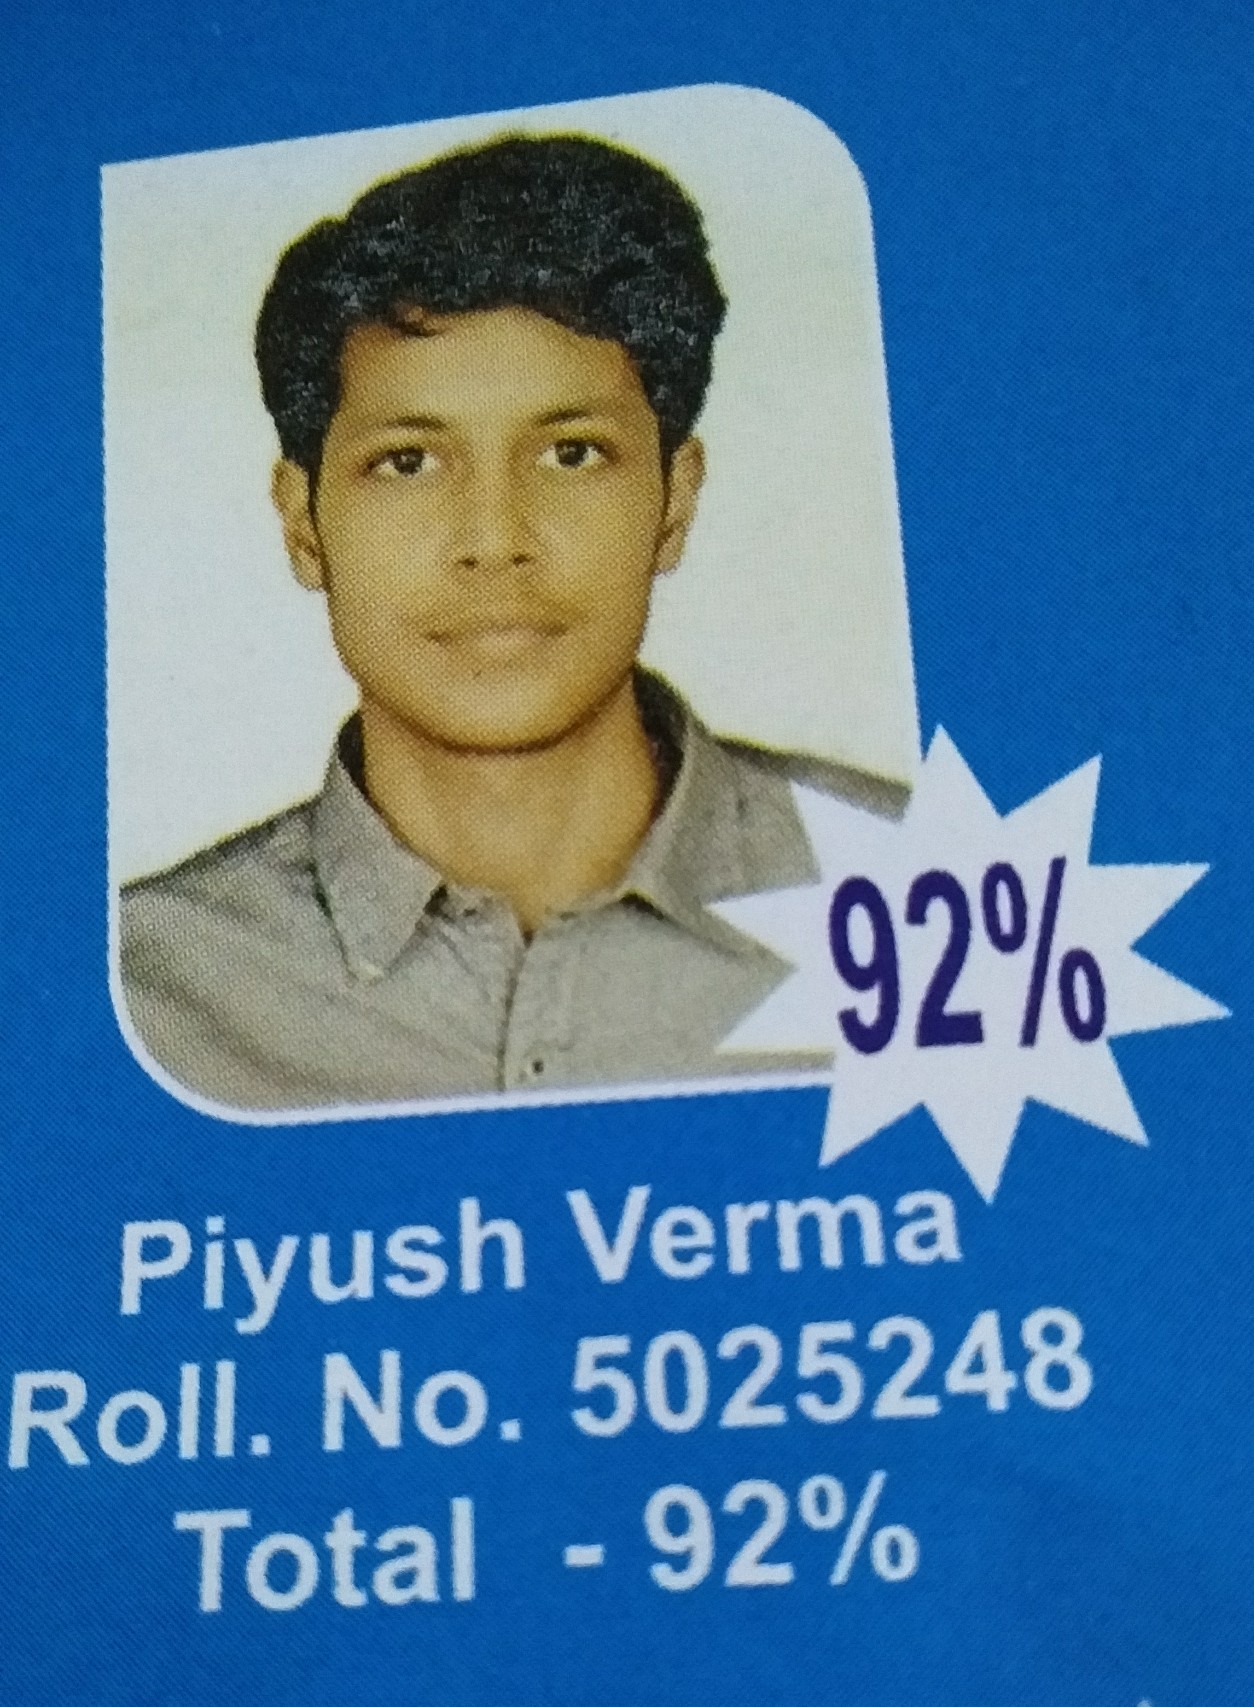 Piyush Verma